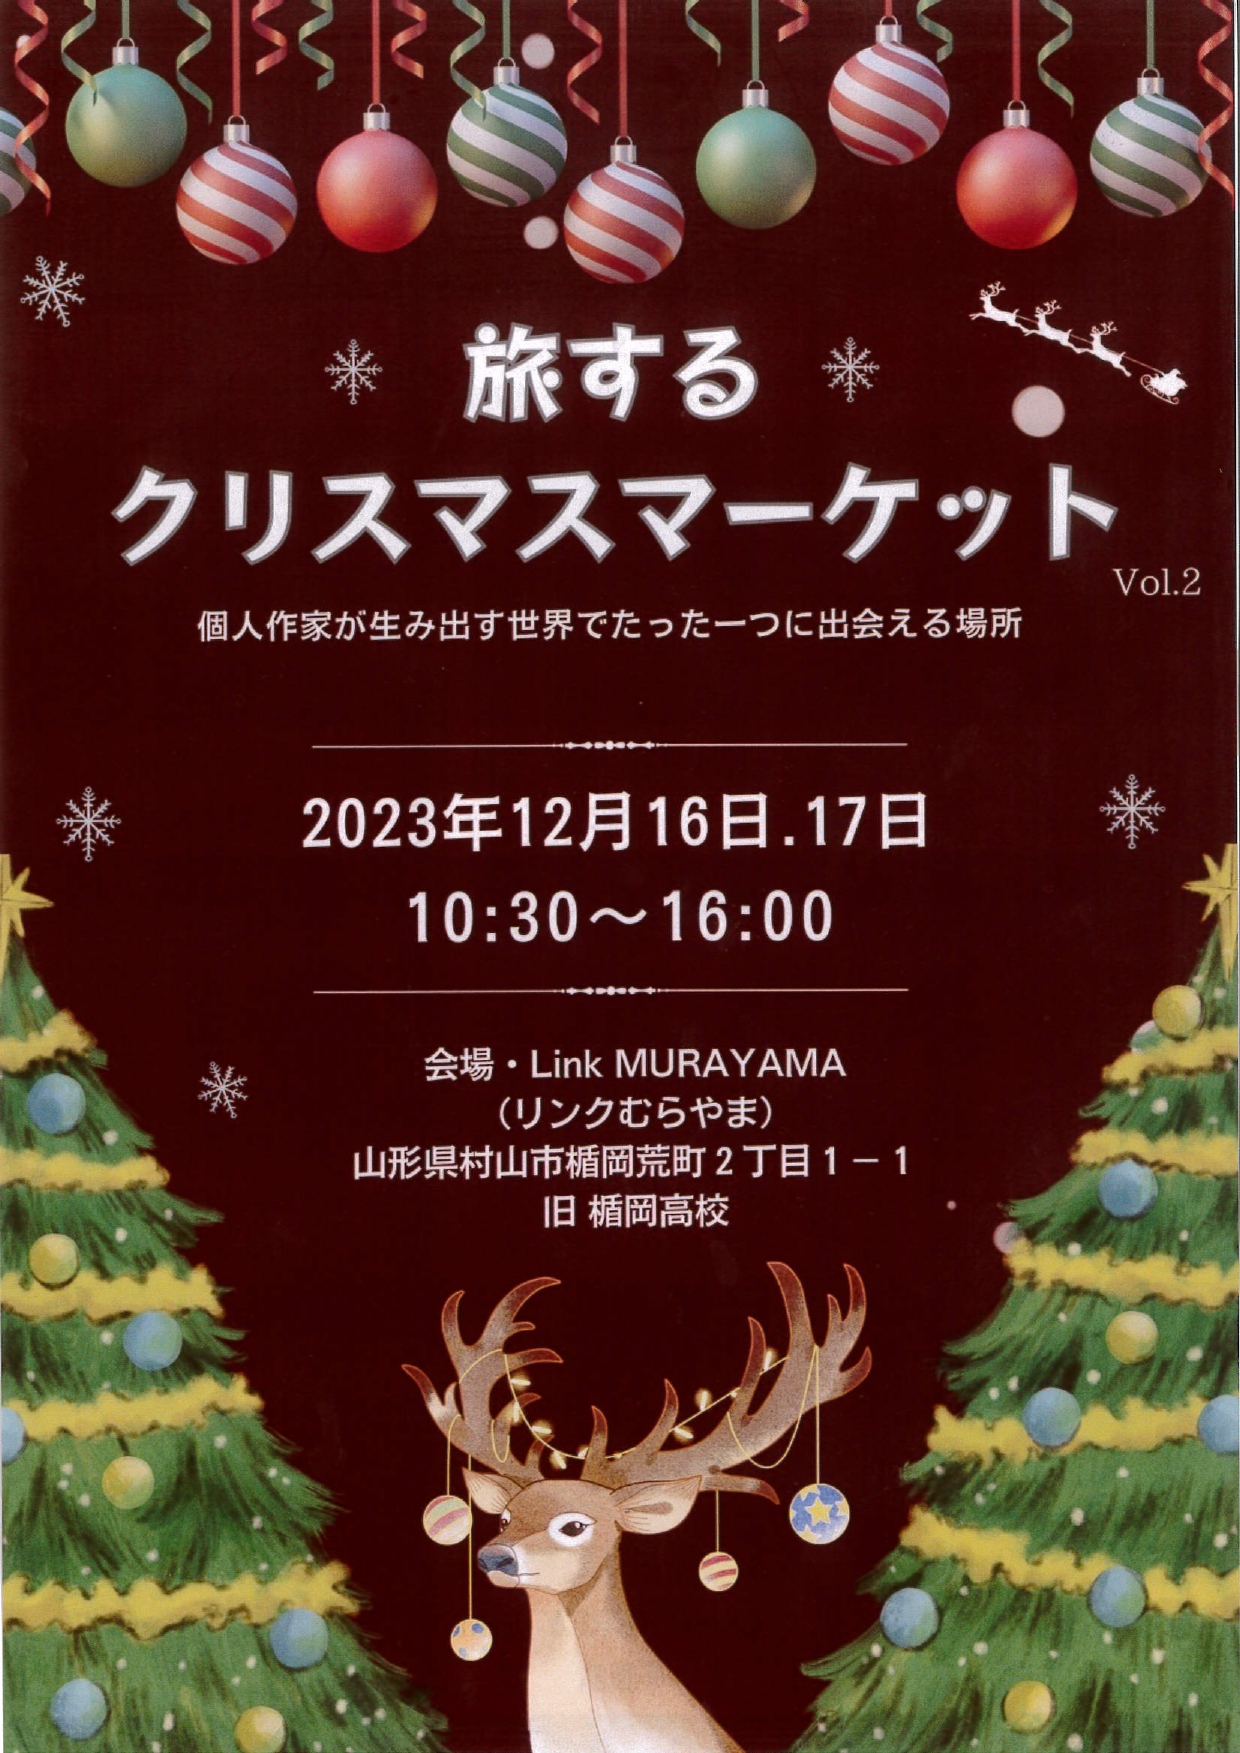 【山形イベント情報12/16〜17】旅するクリスマスマーケットが開催